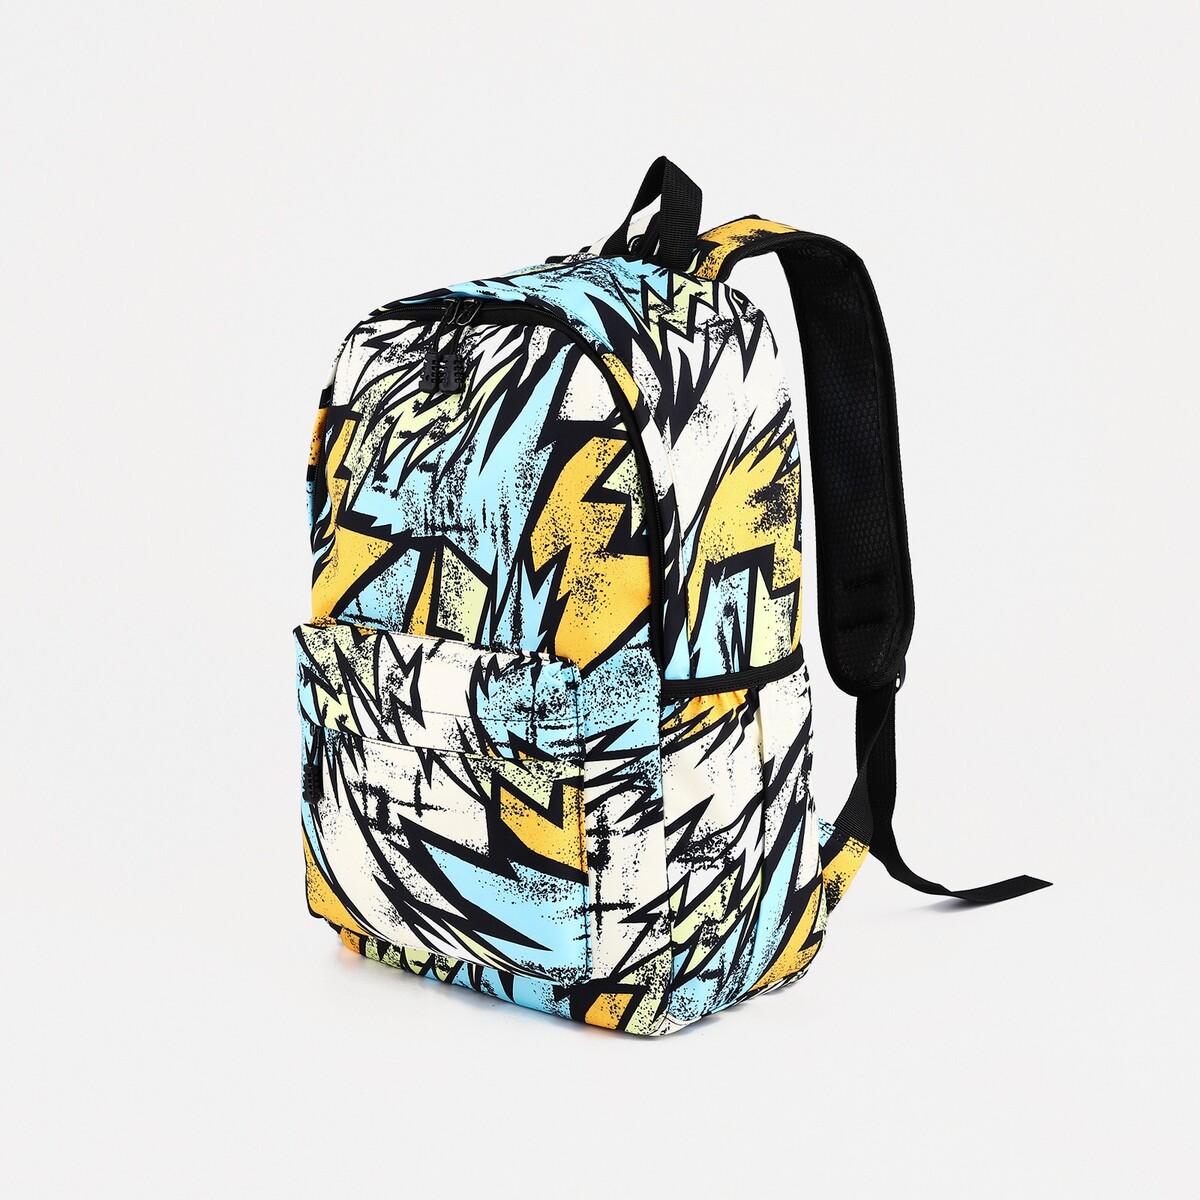 Рюкзак школьный из текстиля на молнии, 3 кармана, цвет желтый/разноцветный рюкзак hike pack 27 желтый